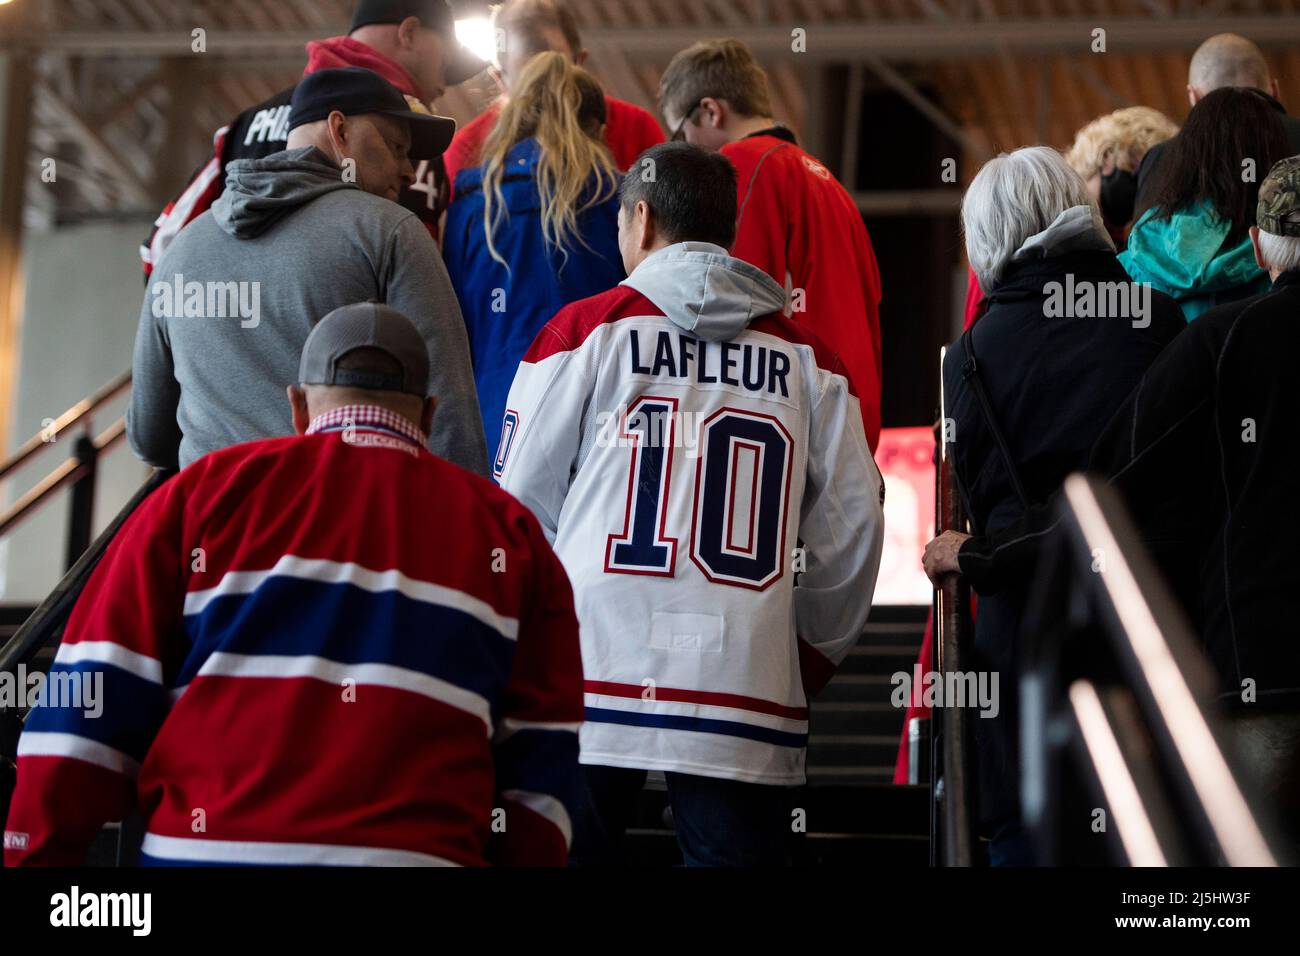 Le 23 avril 2022, Ottawa, ON, CANADA : un fan des Canadiens de Montréal  porte le maillot de la légende du hockey Guy Lafleur, décédé vendredi,  avant l'action de hockey de la